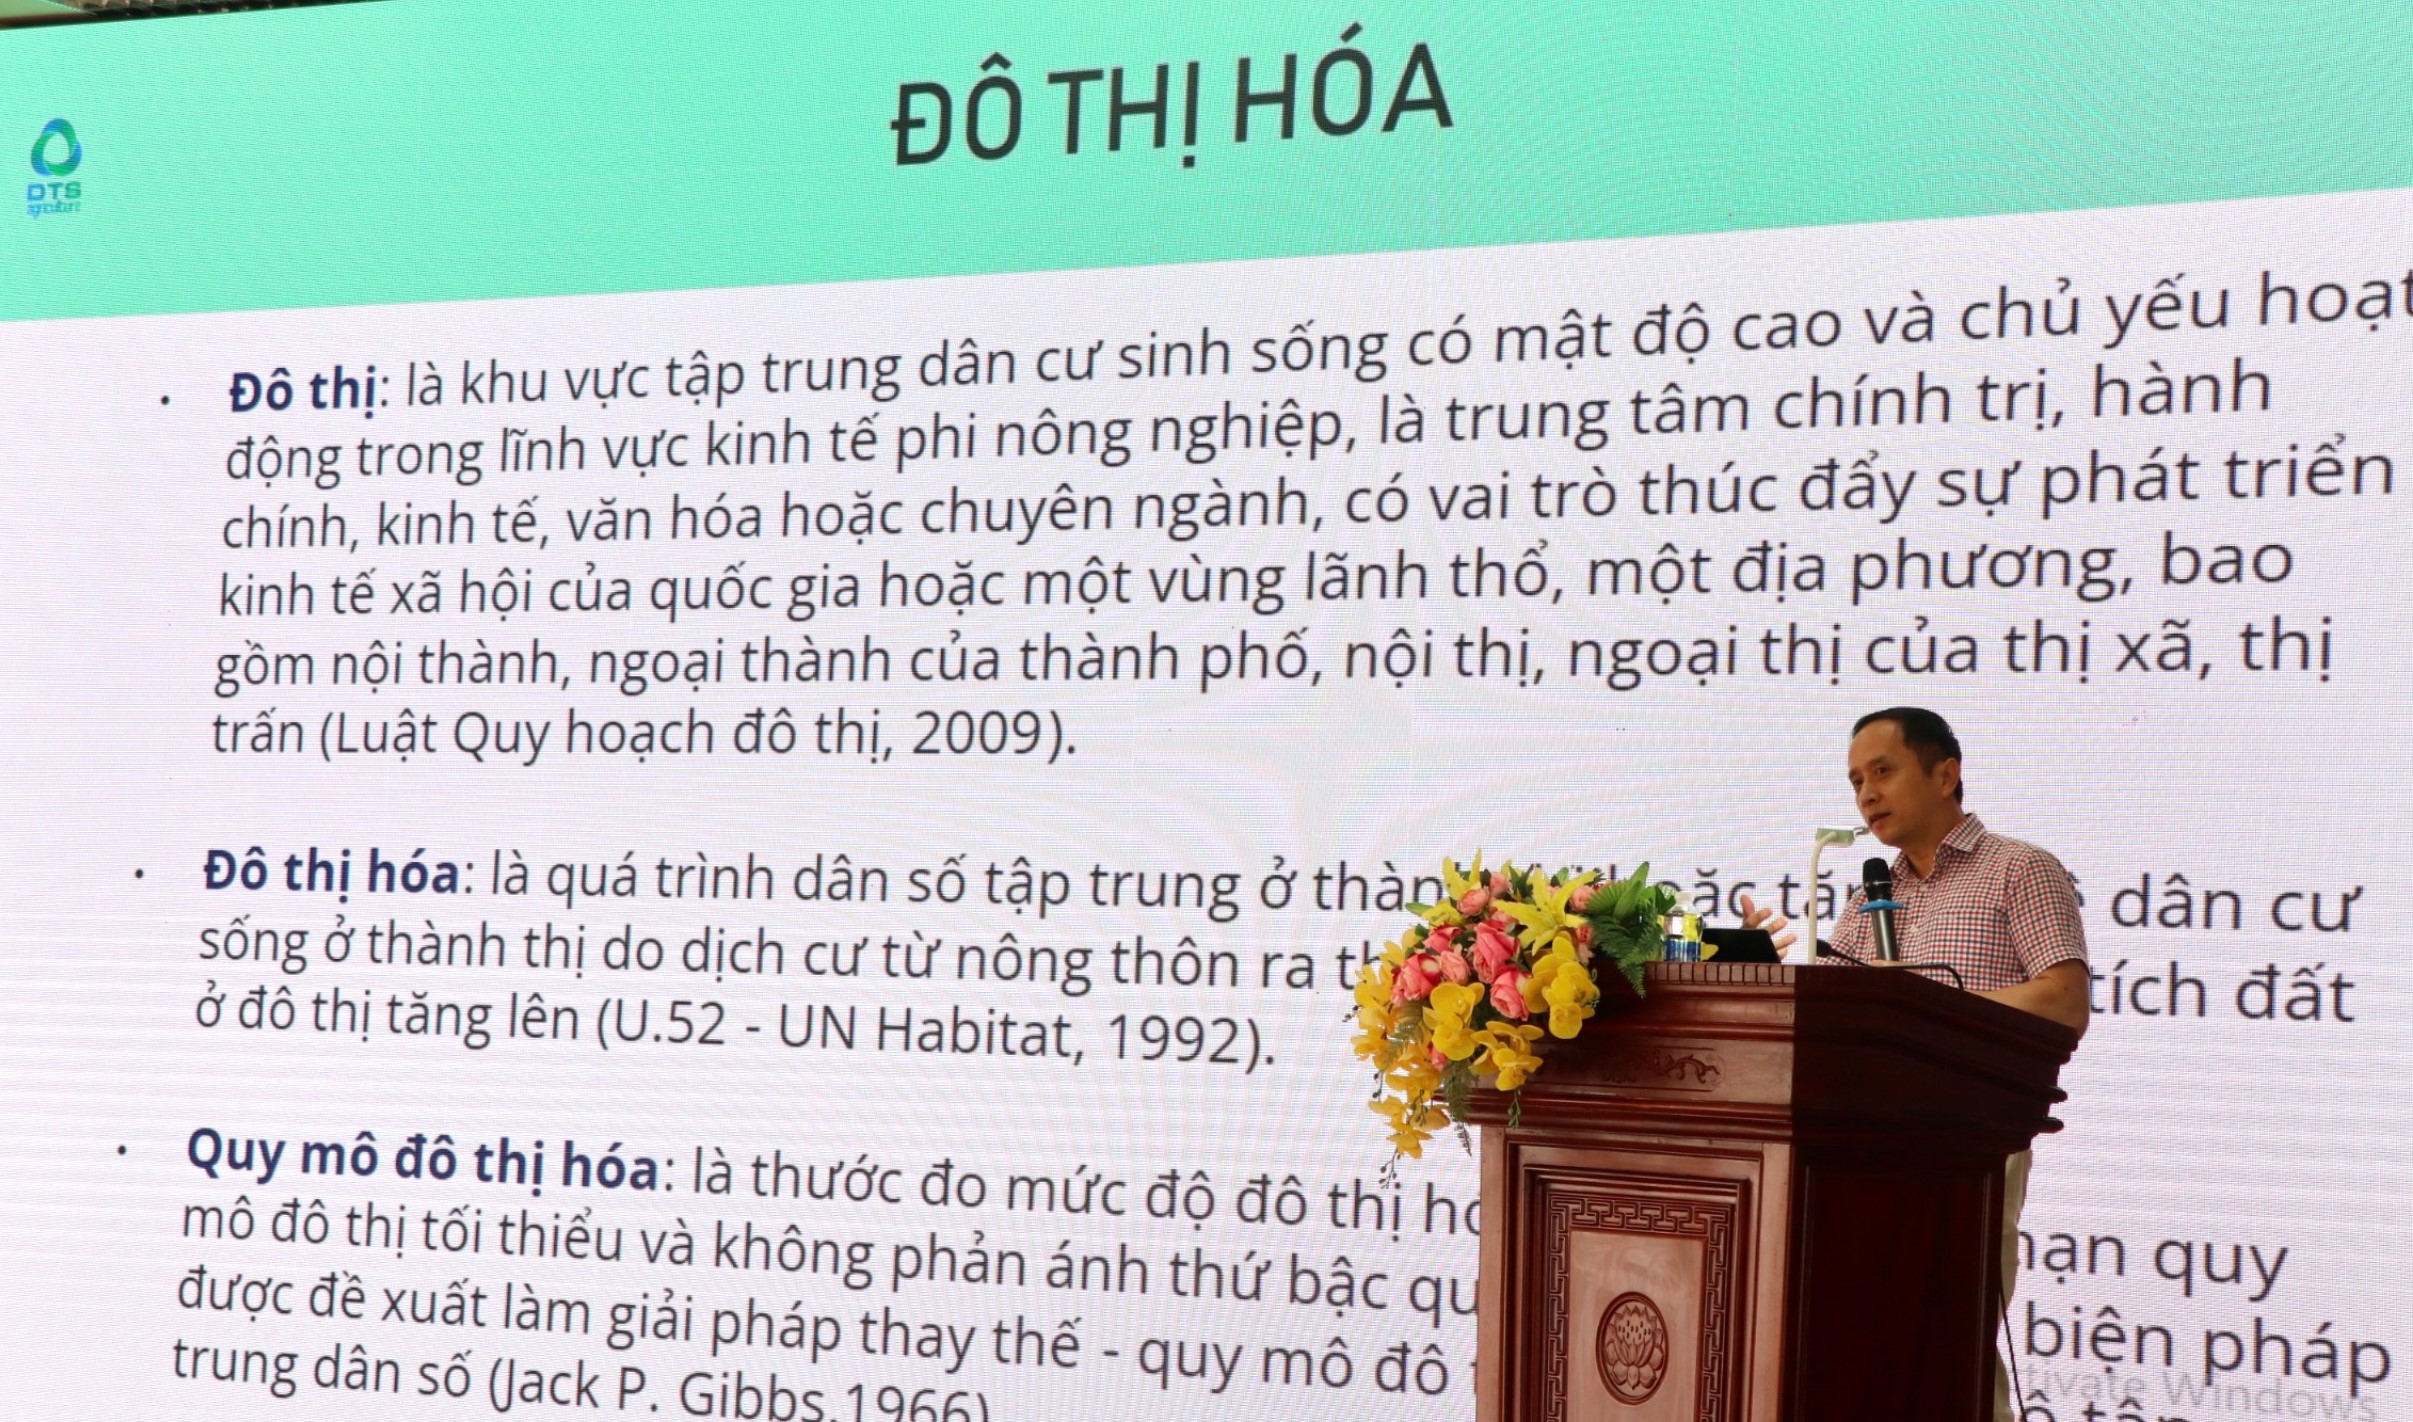 Doanh nghiệp sản xuất nông nghiệp ứng dụng công nghệ số ở Việt Nam mới chỉ đạt 3,8%, vì sao vậy?- Ảnh 1.